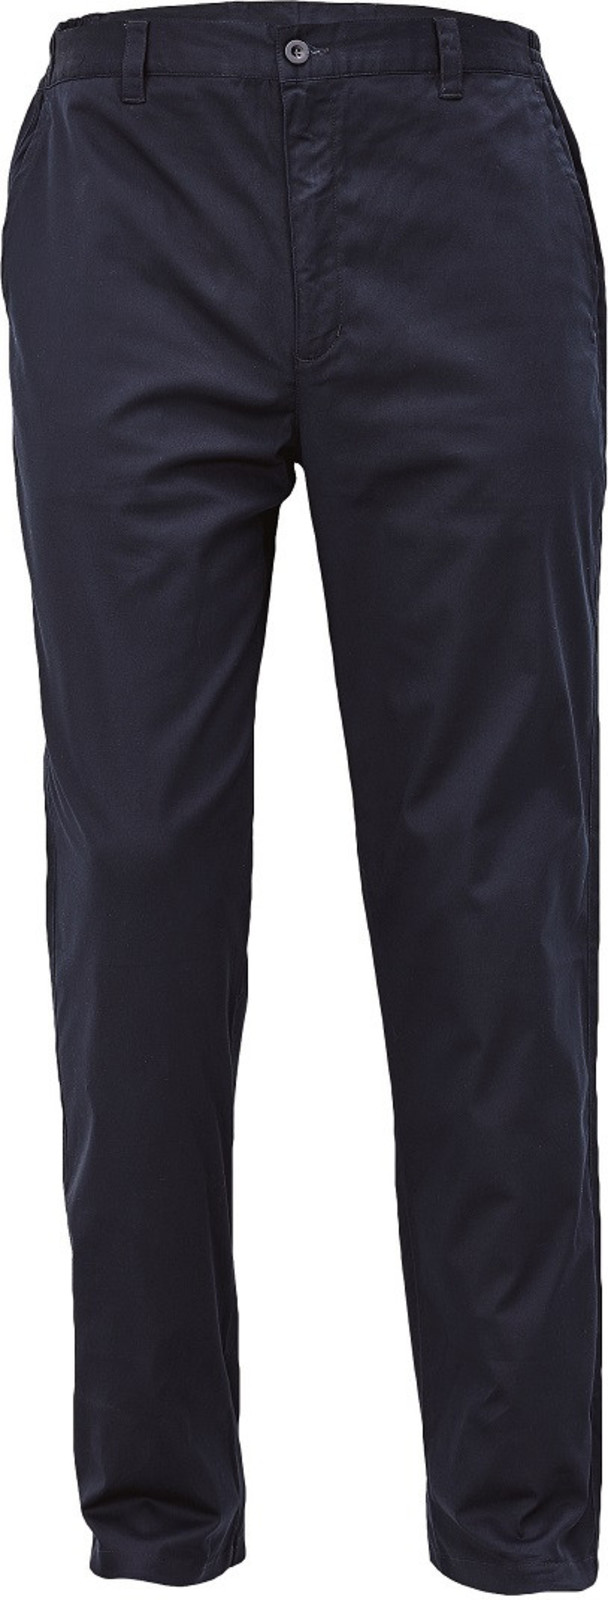 Voľnočasové nohavice Lagan pánske - veľkosť: 52, farba: navy